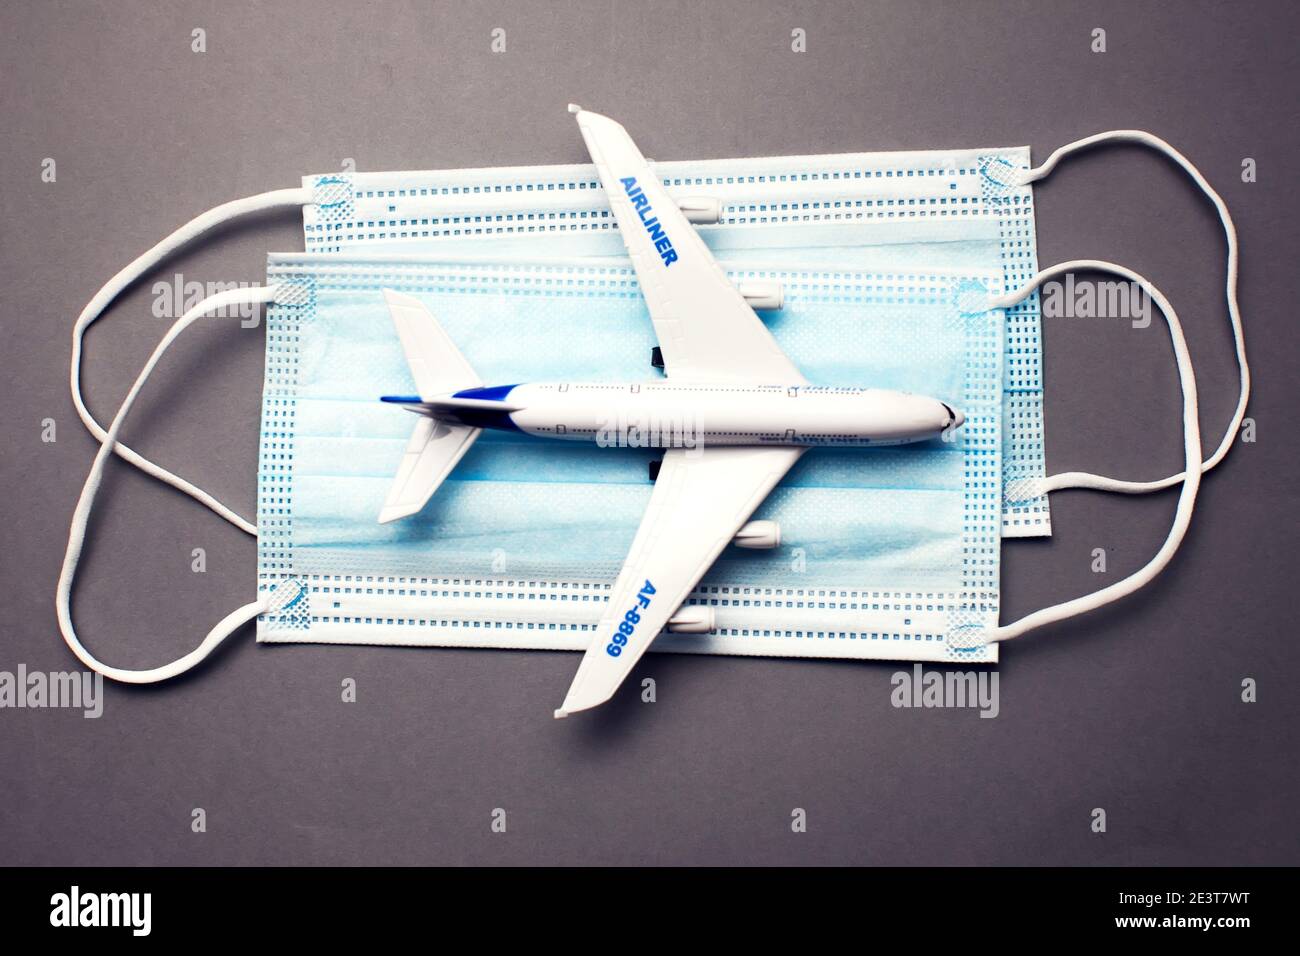 Reise- und Gesundheitskonzept während der covid-19-Pandemie. Modell eines weißen Plastikflugzeugs und Masken auf grauem Hintergrund. Stockfoto